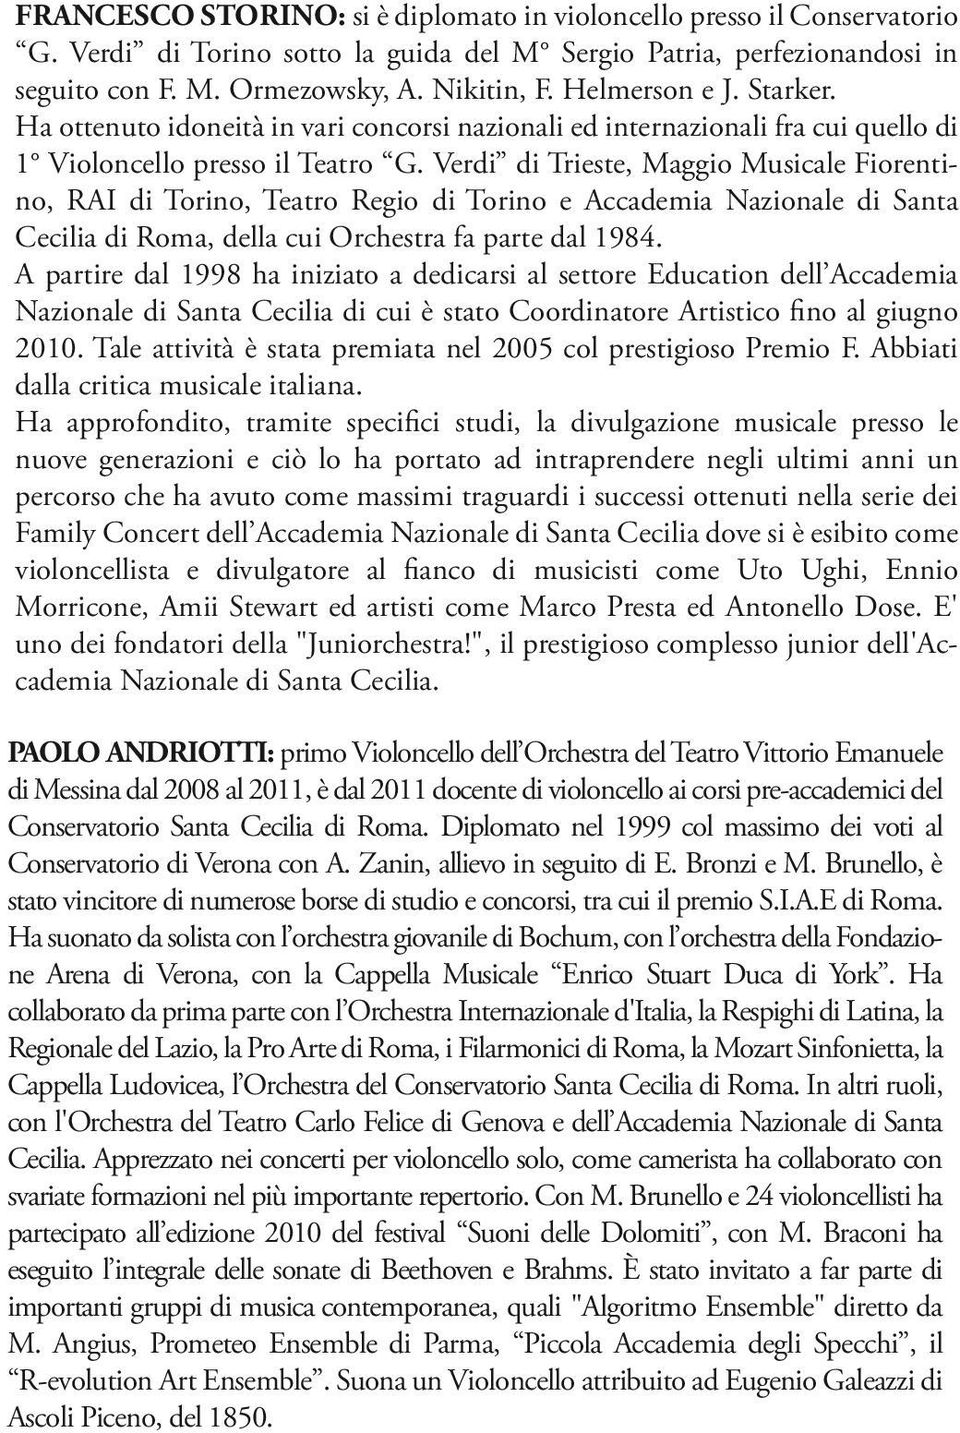 Verdi di Trieste, Maggio Musicale Fiorentino, RAI di Torino, Teatro Regio di Torino e Accademia Nazionale di Santa Cecilia di Roma, della cui Orchestra fa parte dal 1984.